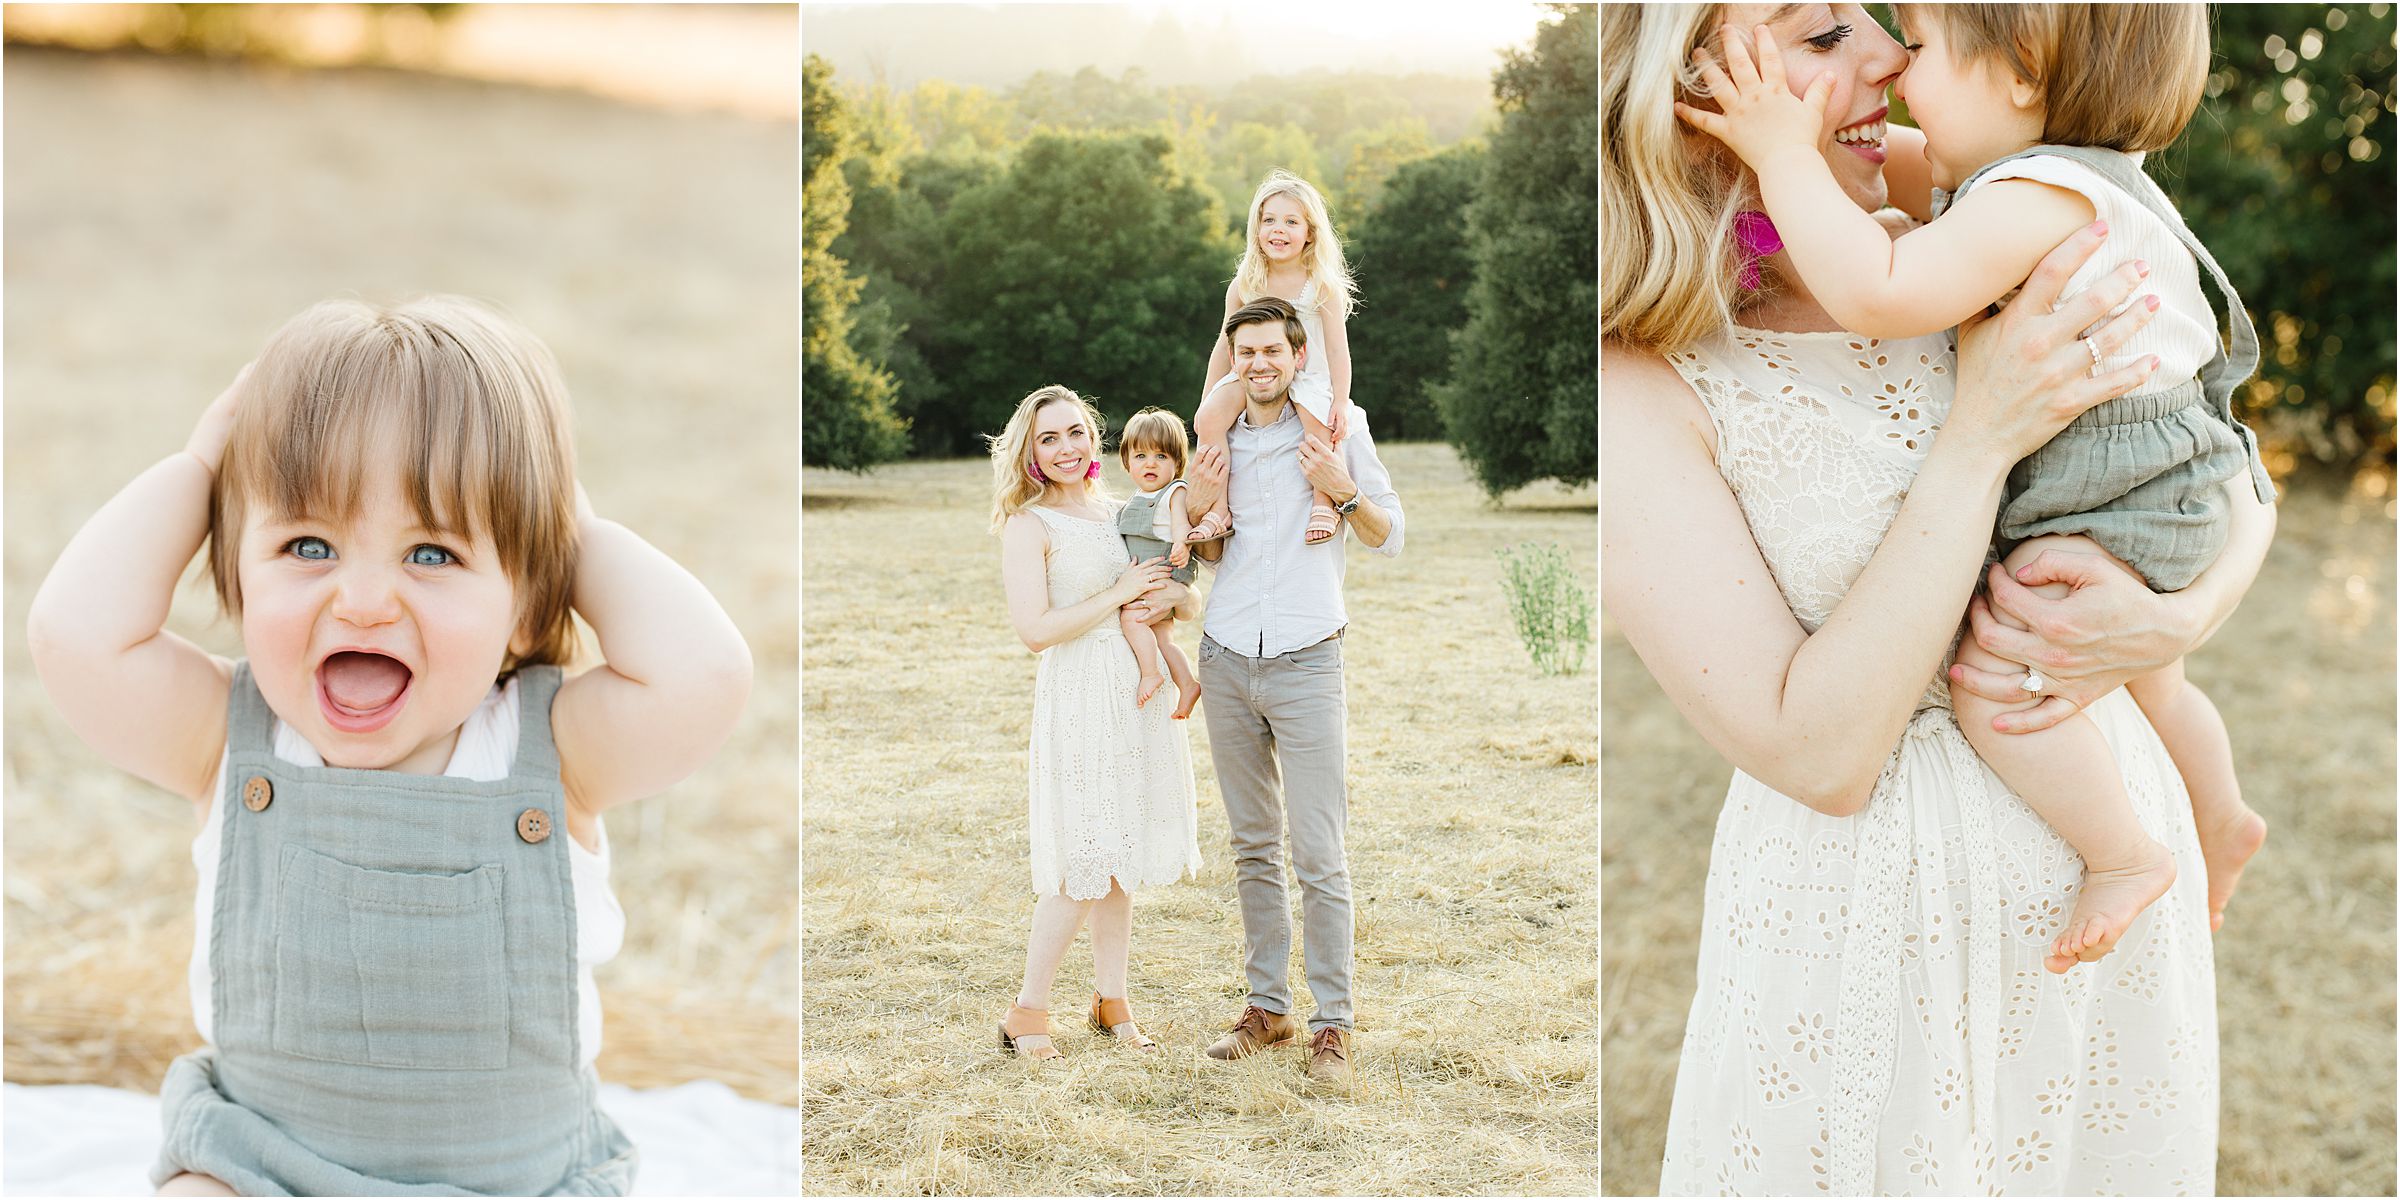 Family Photography Palo Alto and Portola Valley locations